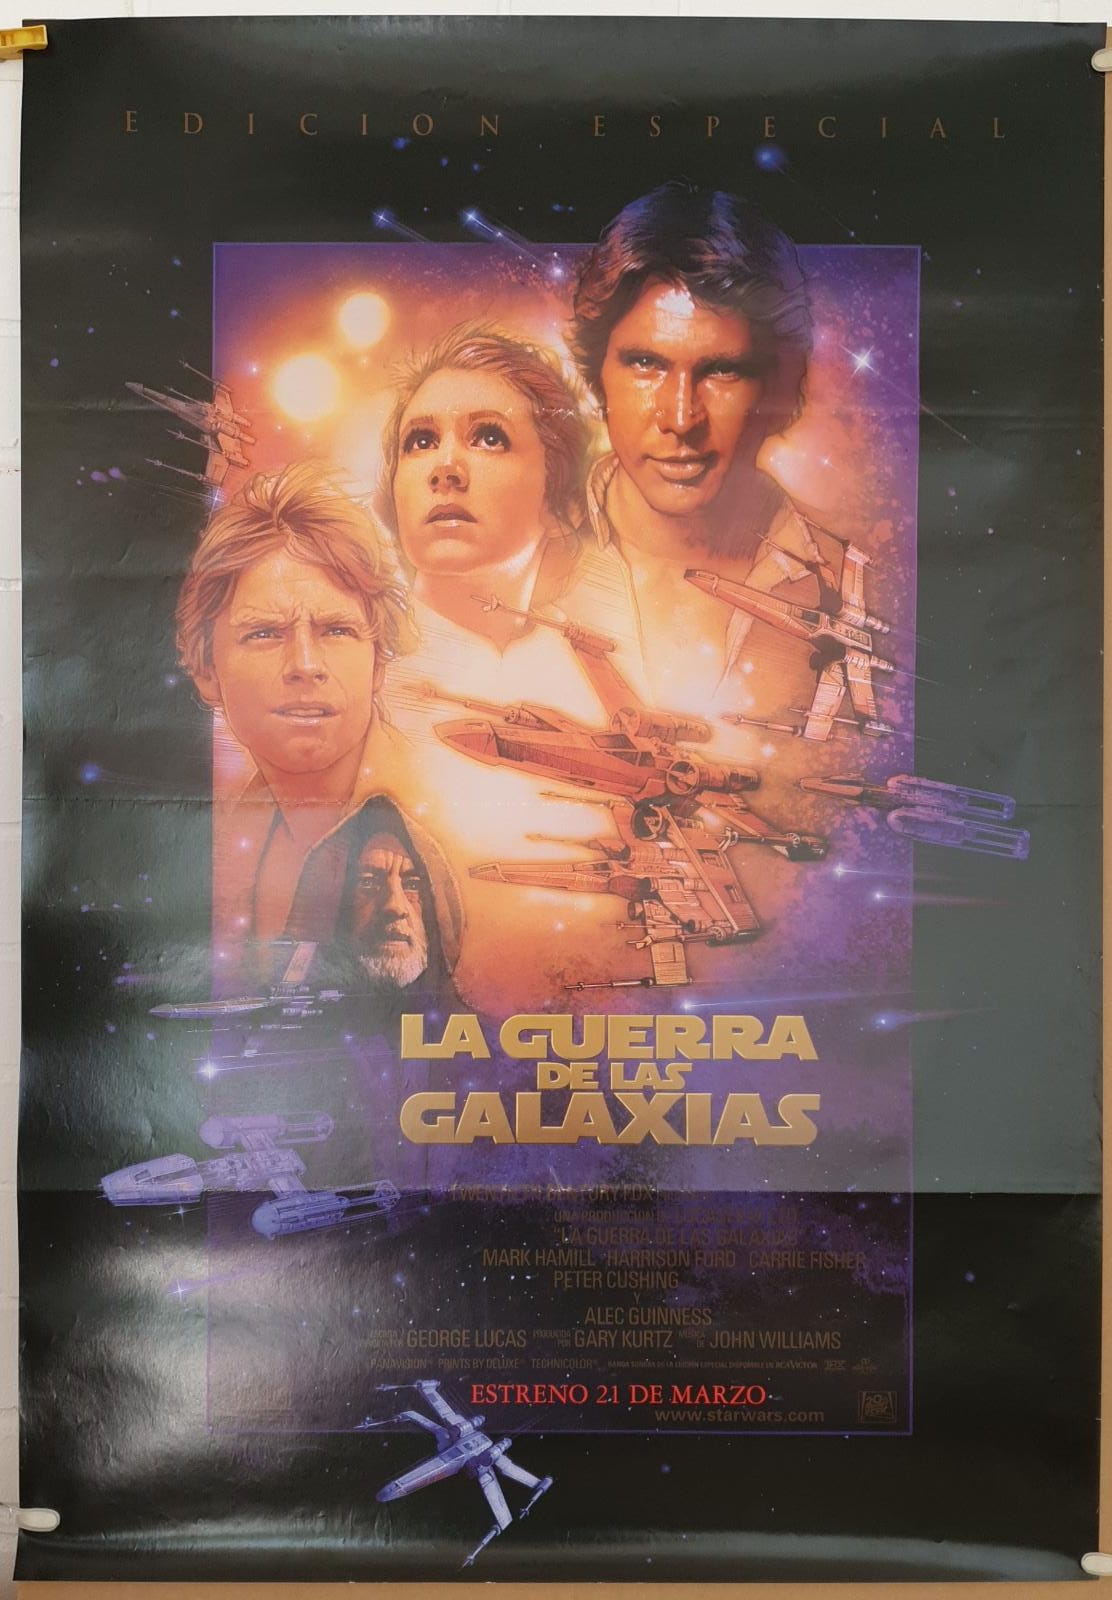 La Guerra de las Galaxias. Edición Especial. Cartel (100x70) Reposición de 1997